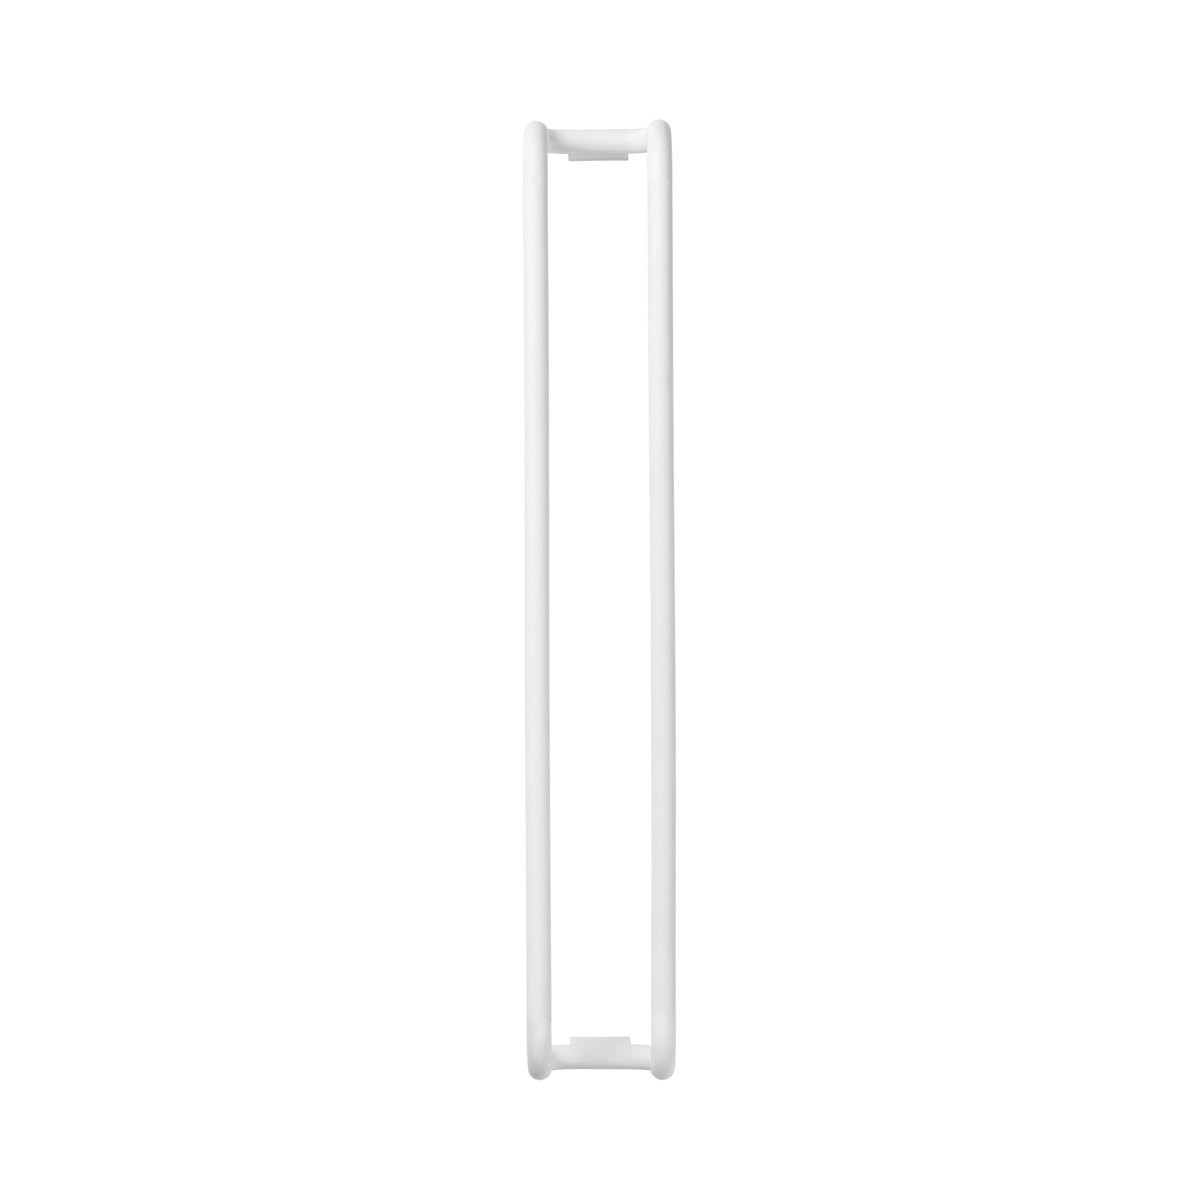 Gästehandtuchhalter -MODO- White. Material: Stahl itanbeschichtet. Von Blomus.